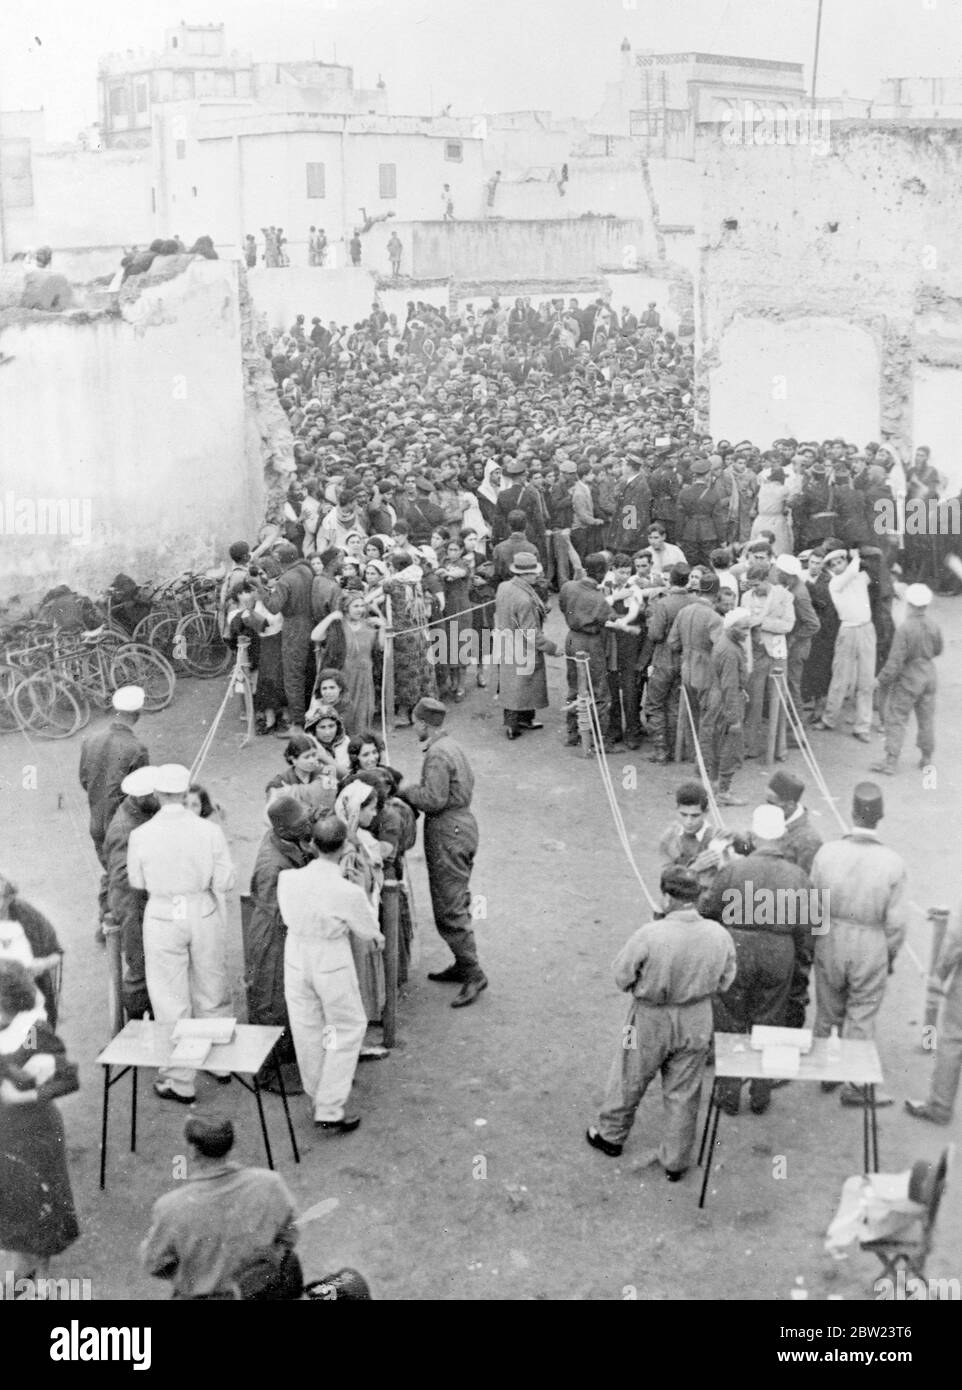 6,000 Menschen in der Massenimpfung in Casablanca. In Casablanca, Marokko, wurden massenhafte Impfungen durchgeführt, über 6,000 Menschen wurden von der Polizei aufgefahren und mussten durch Auswegsgänge zum Arzt und seinen Assistenten gehen, bevor sie freigelassen wurden. 12 Februar 1938 Stockfoto